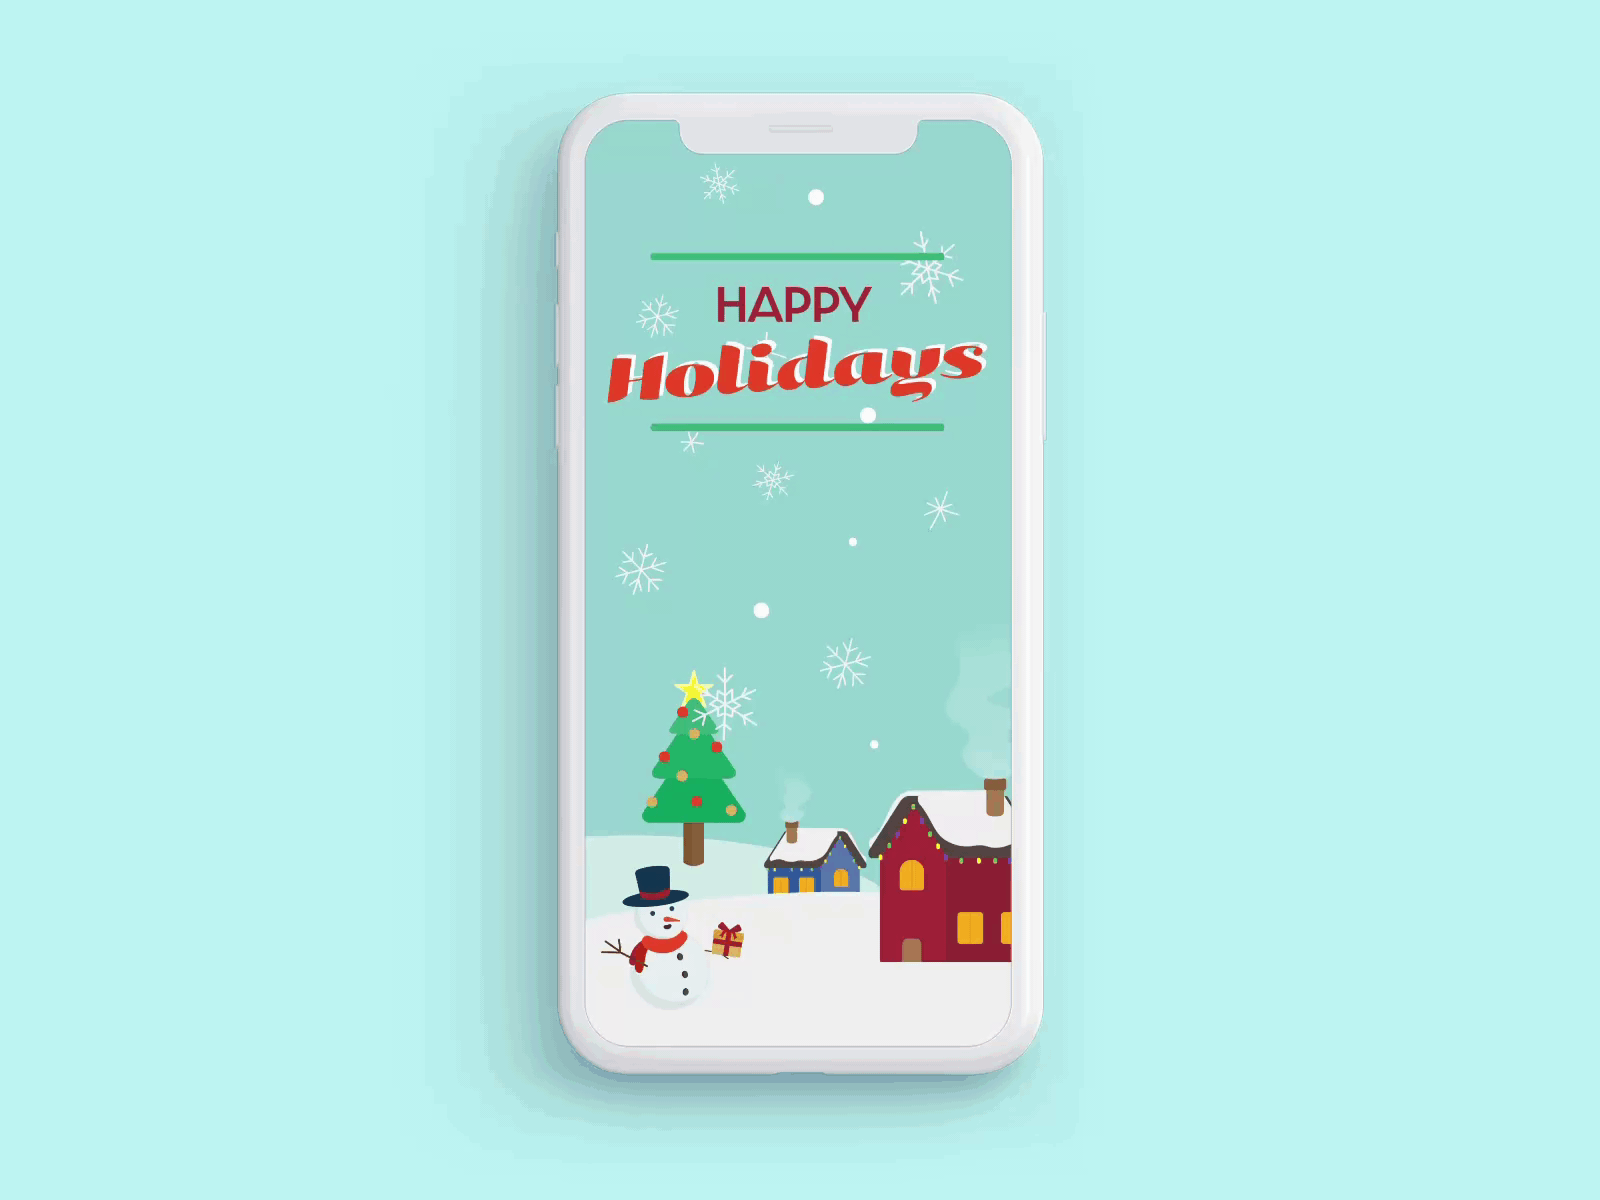 Christmas Mobile Greeting card